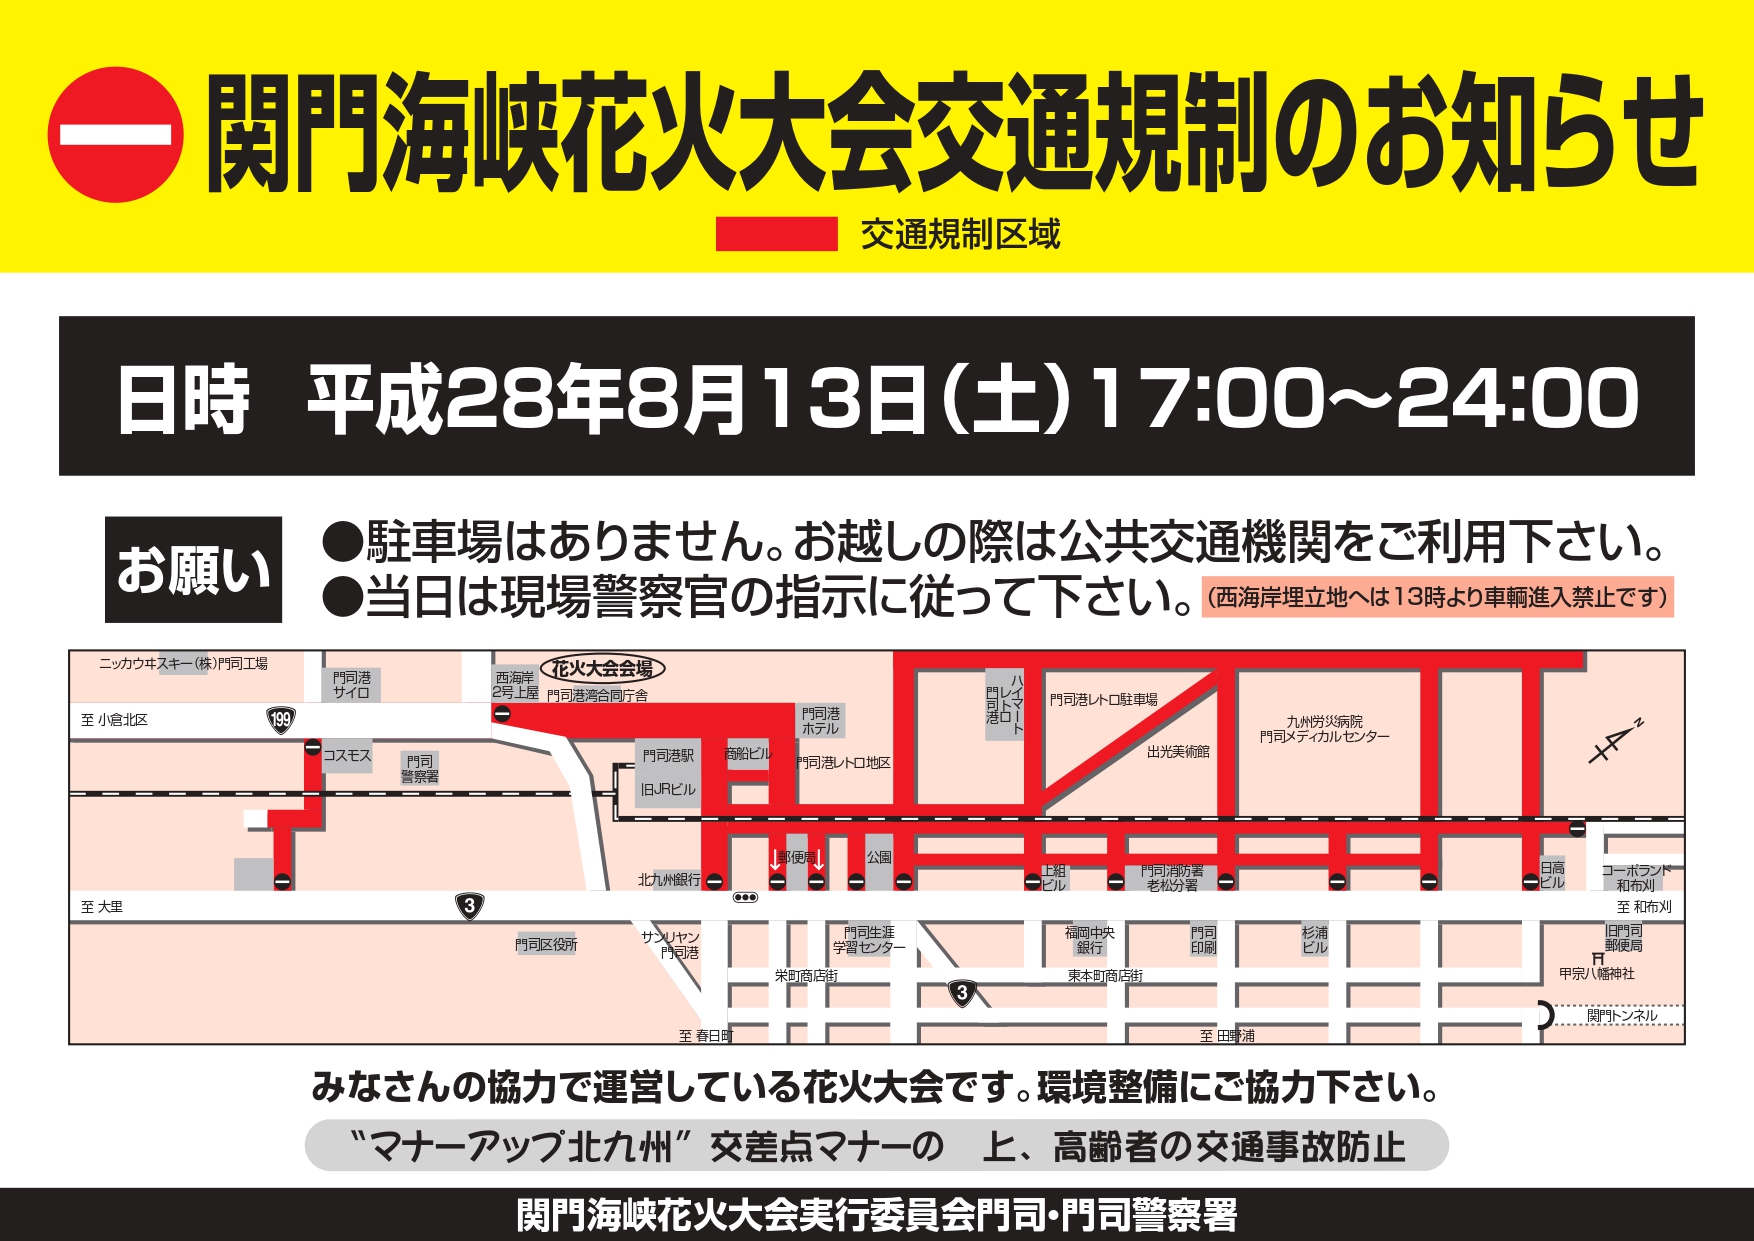 8月13日、関門海峡花火大会の交通規制について